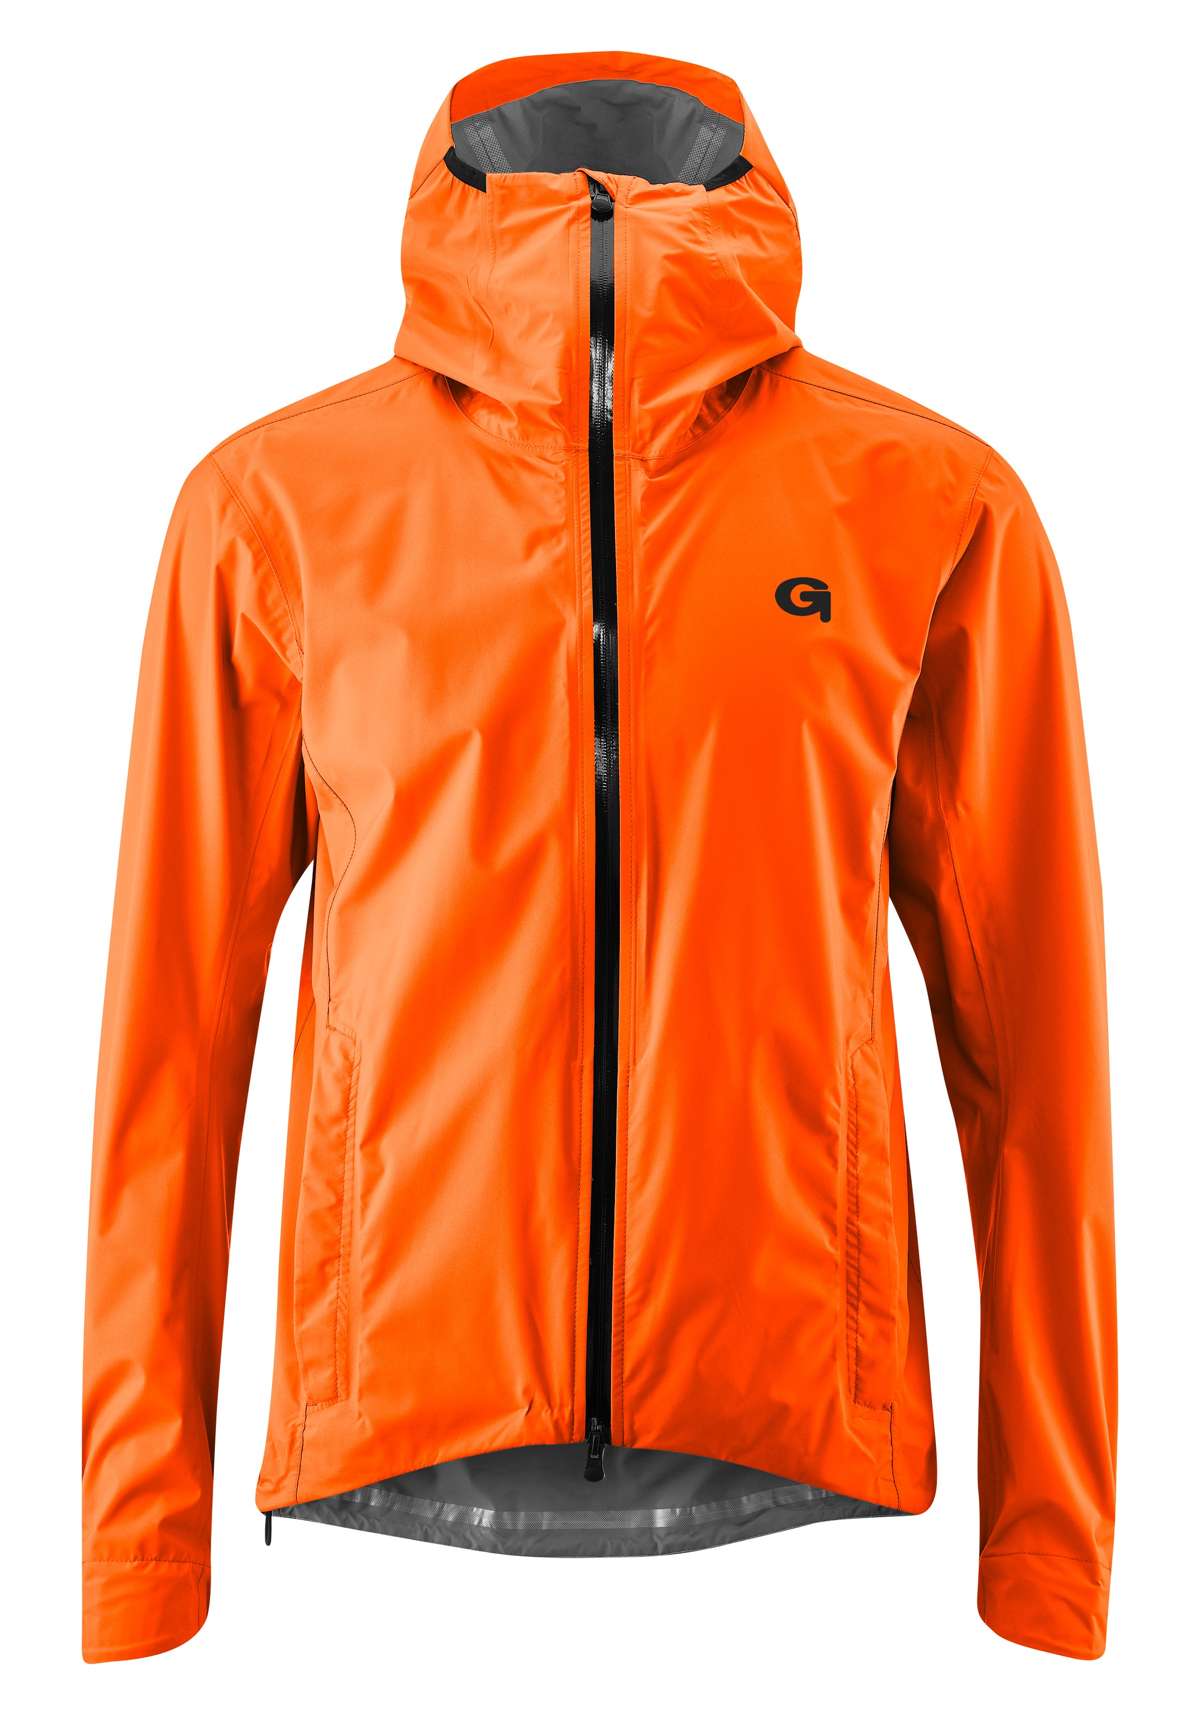 Велосипедная куртка, мужская дождевик, ветро- и водонепроницаемая, велосипедная куртка с капюшоном.